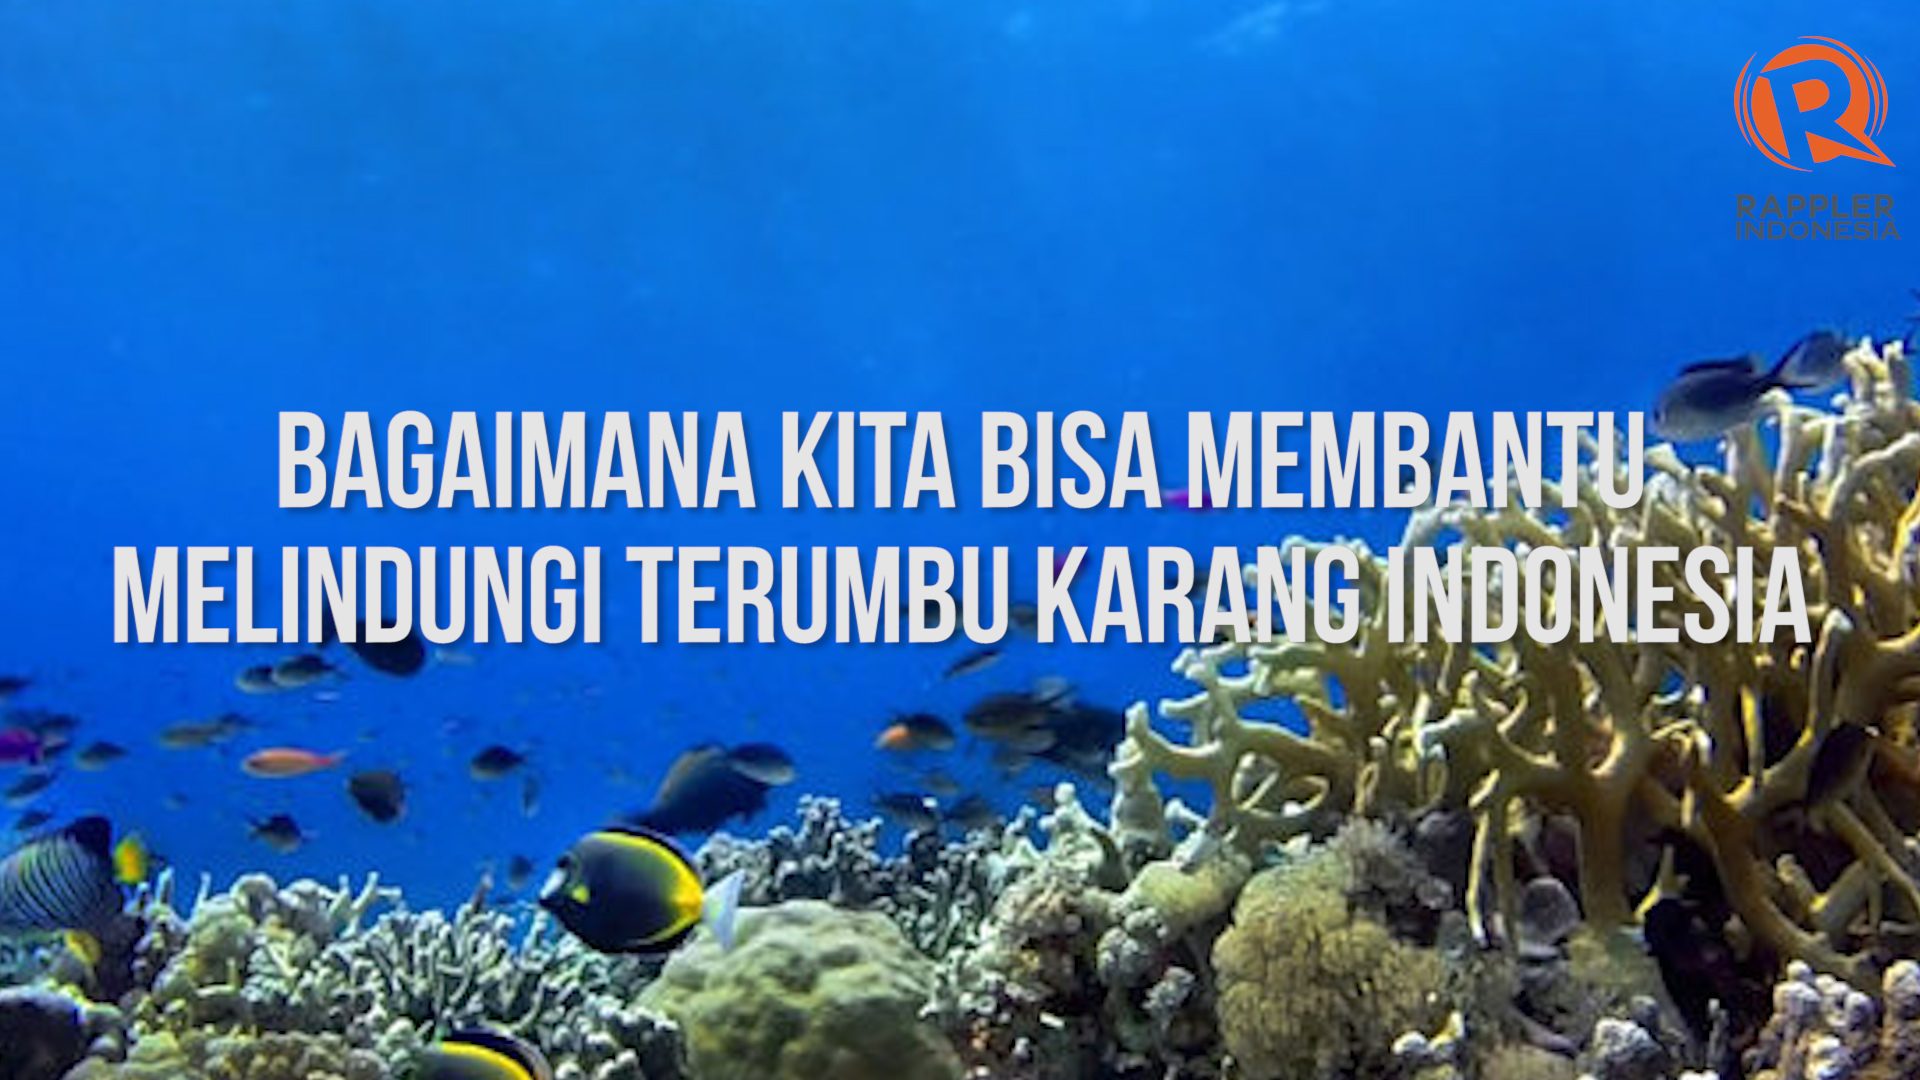 SAKSIKAN: Bagaimana kita bisa melindungi terumbu karang Indonesia